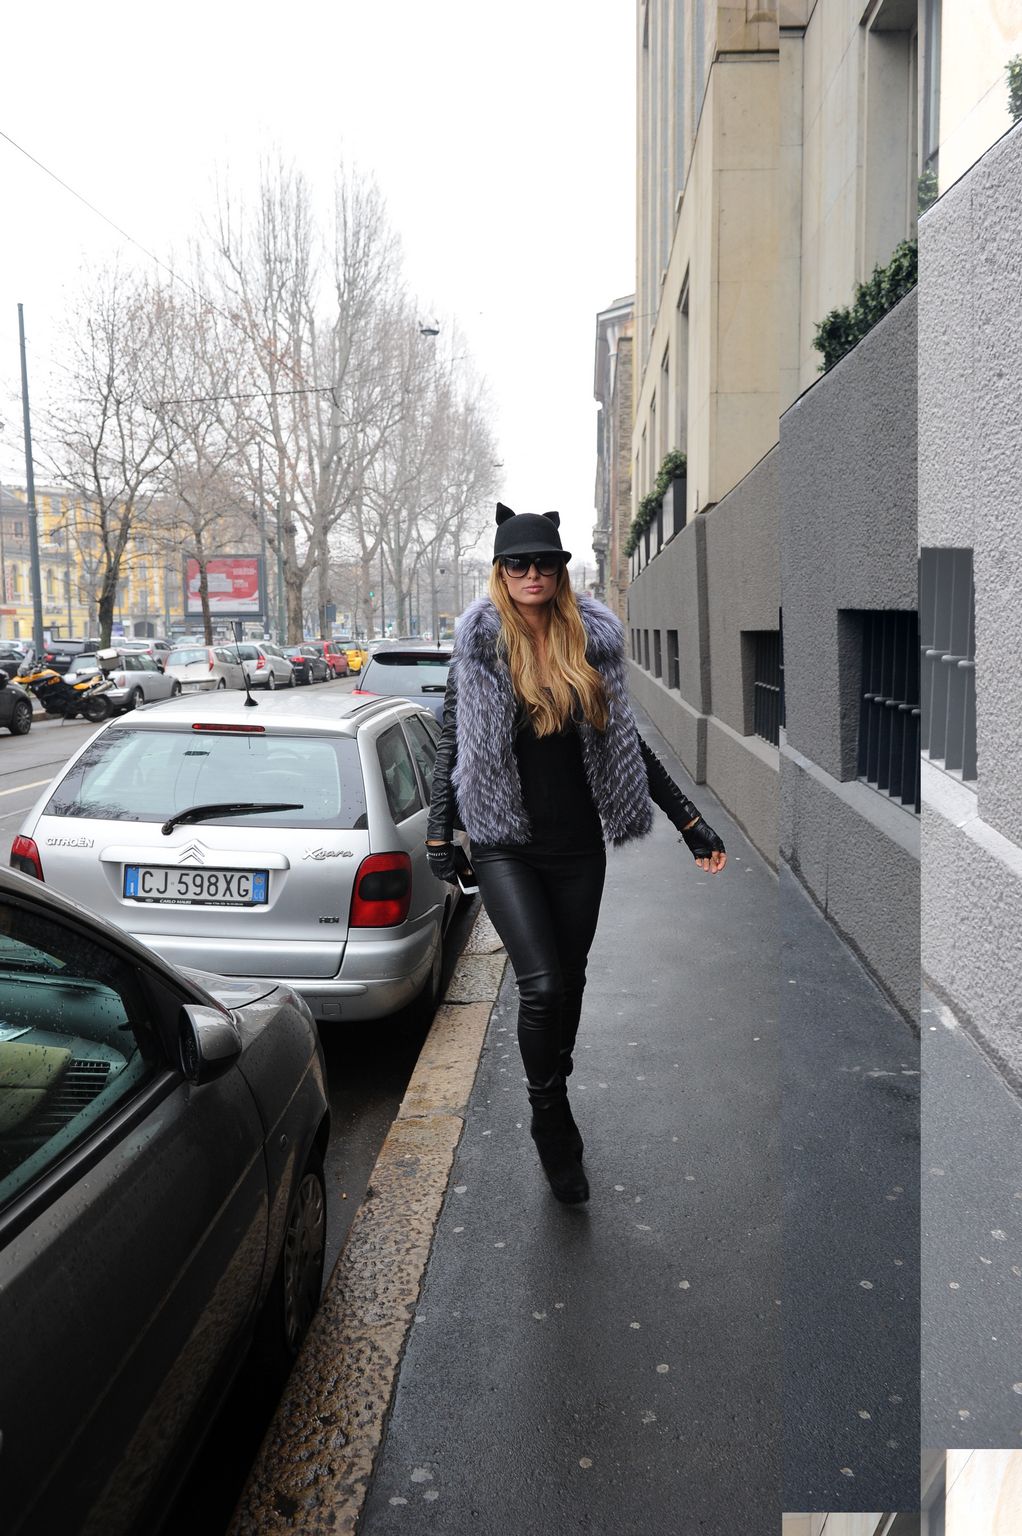 Paris Hilton seen in Milan